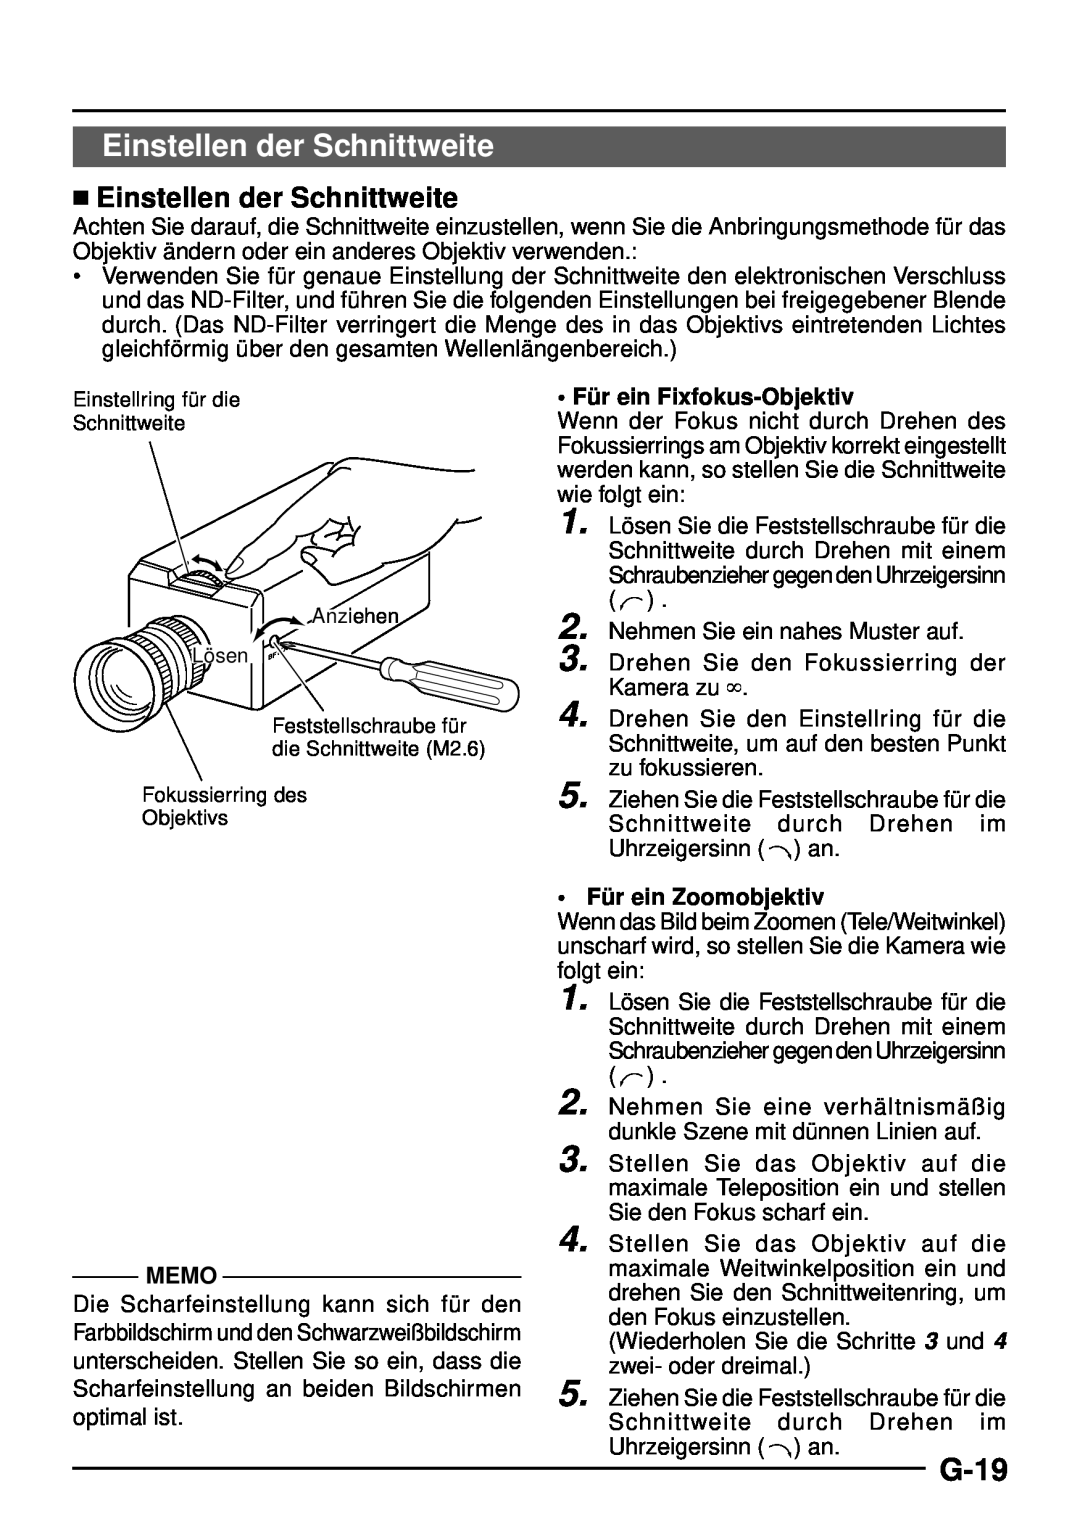 JVC TK-C1460 manual G-19,  Einstellen der Schnittweite, Fü r ein Fixfokus-Objektiv, Memo, Fü r ein Zoomobjektiv 